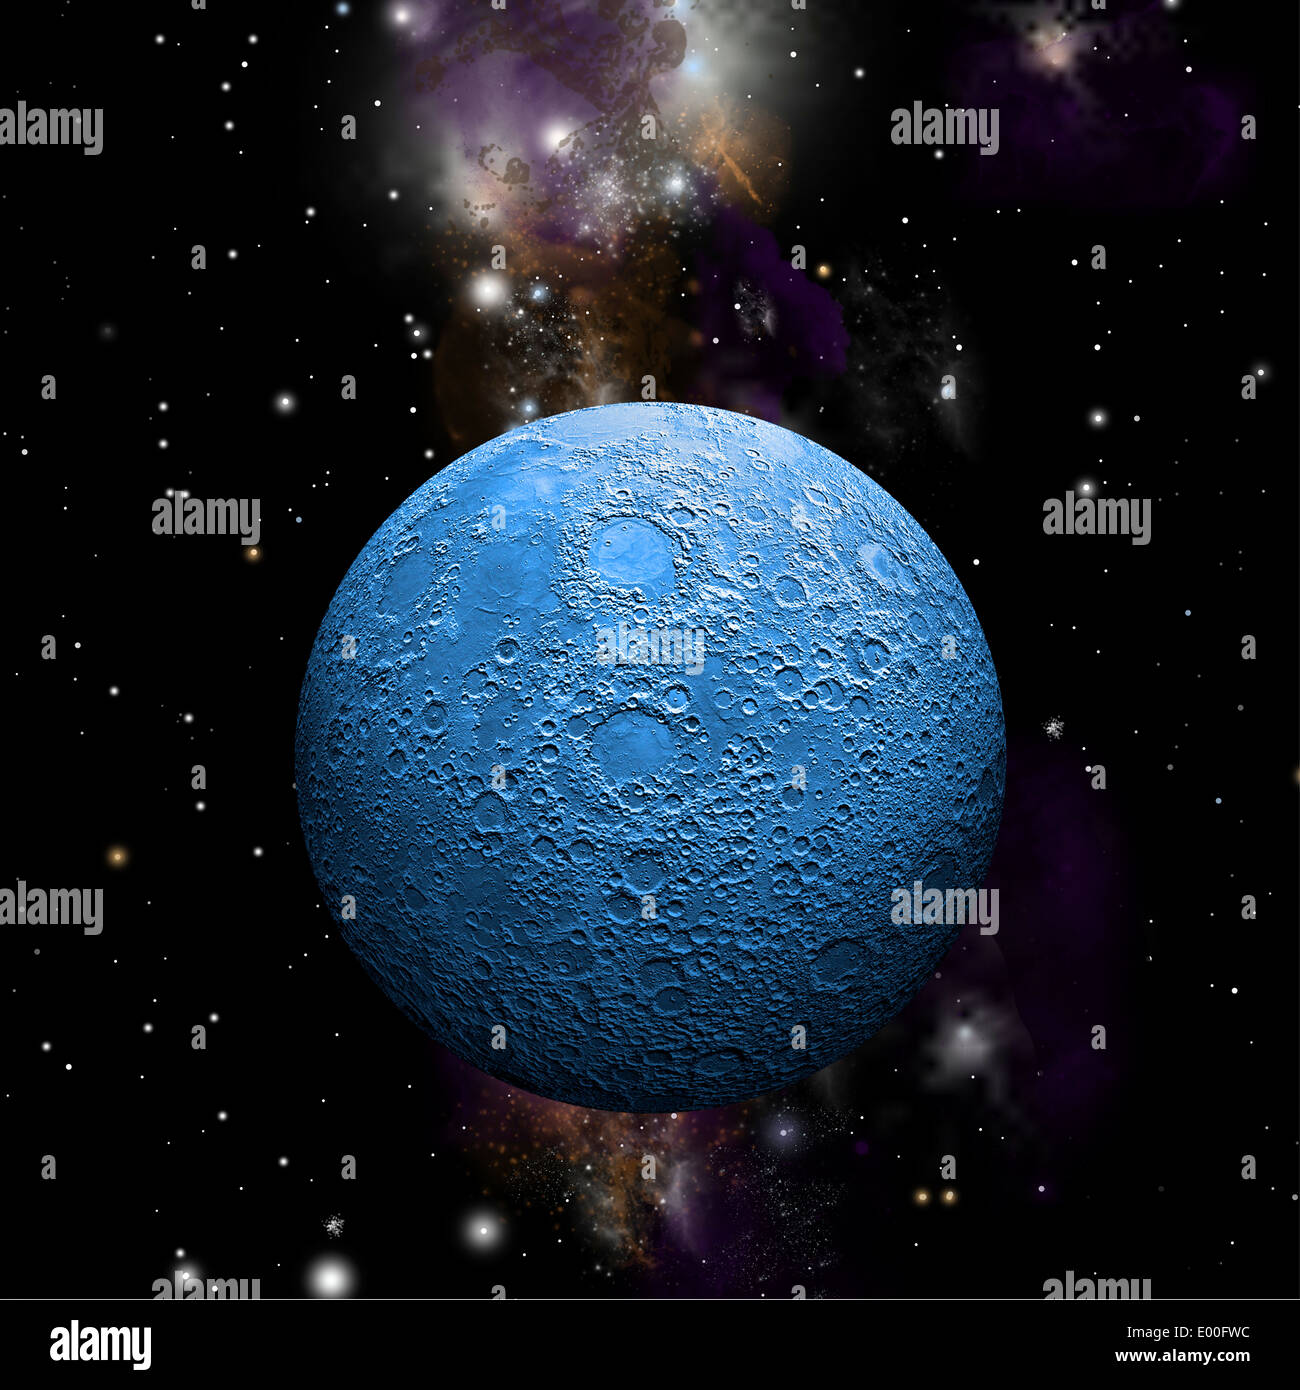 Artista della rappresentazione di un approccio fortemente cratered moon da solo nello spazio con una nebulosa in background. T Foto Stock